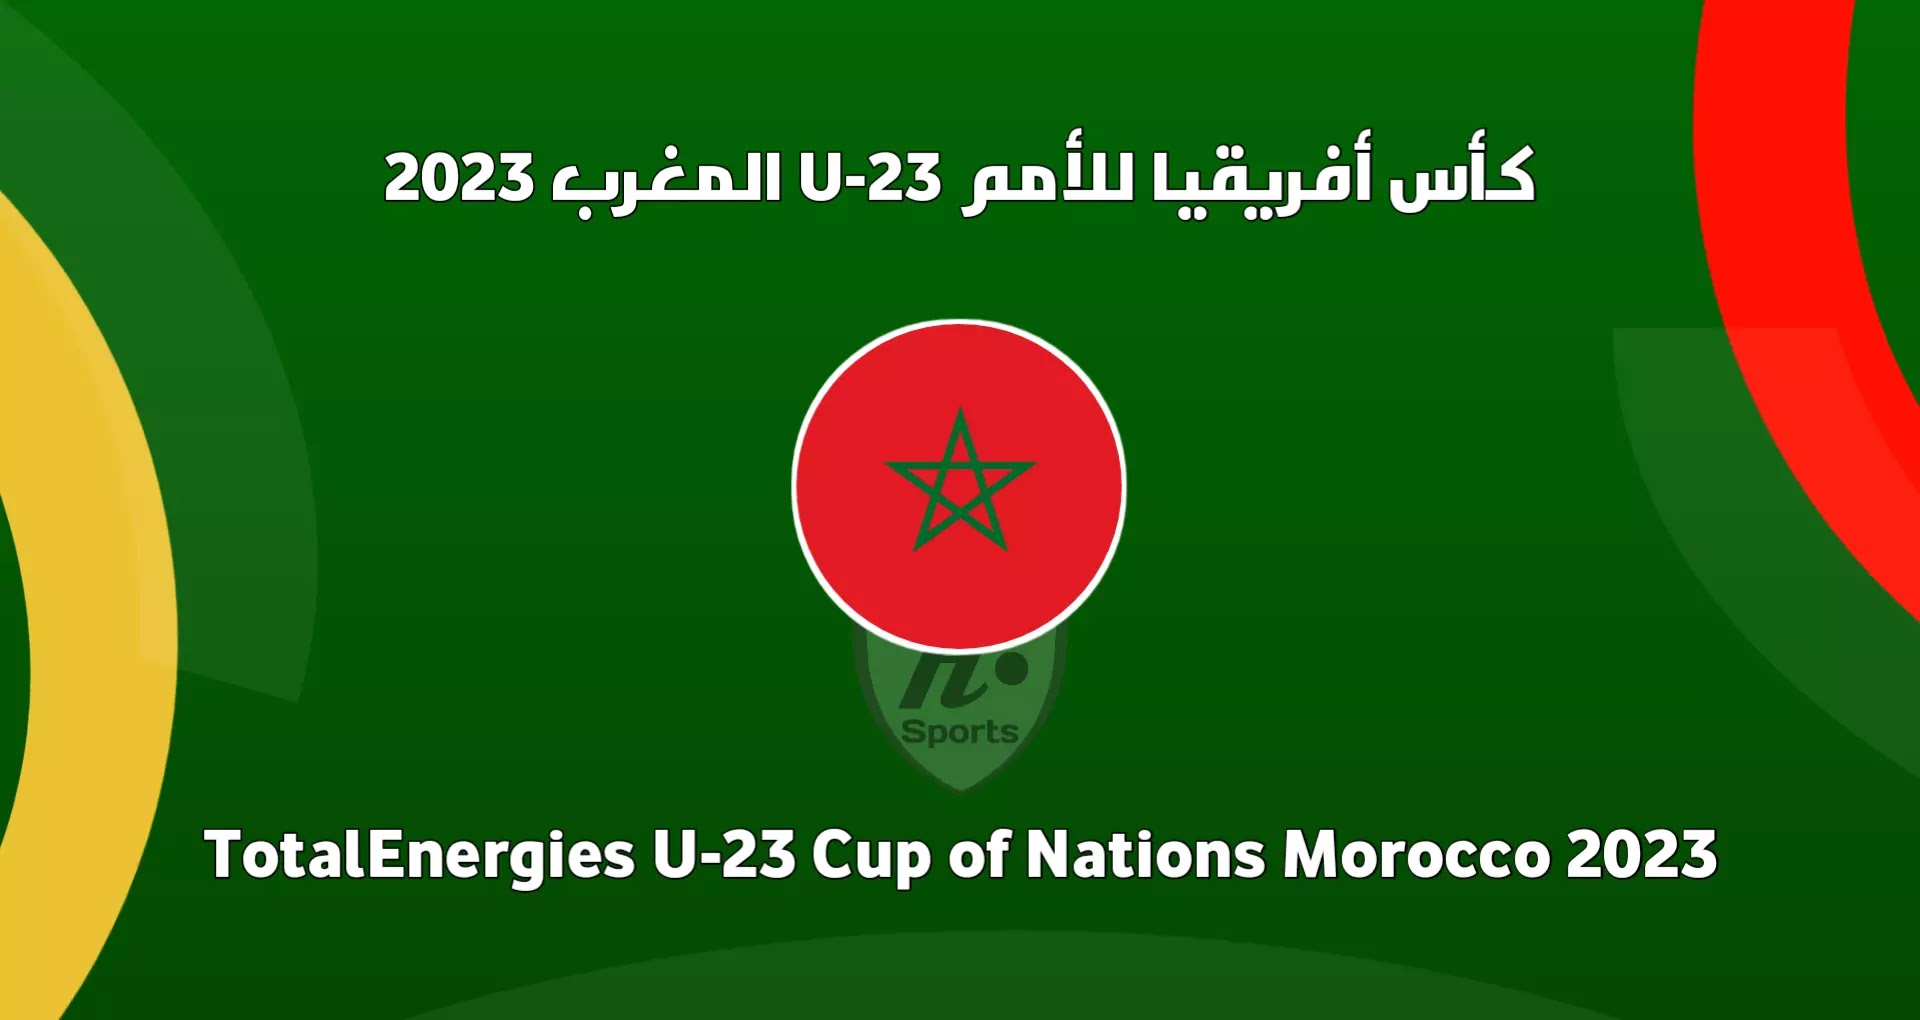 موعد مباراة المنتخب المغربي القادمة في نصف نهائي كأس إفريقيا لأقل من 23 سنة